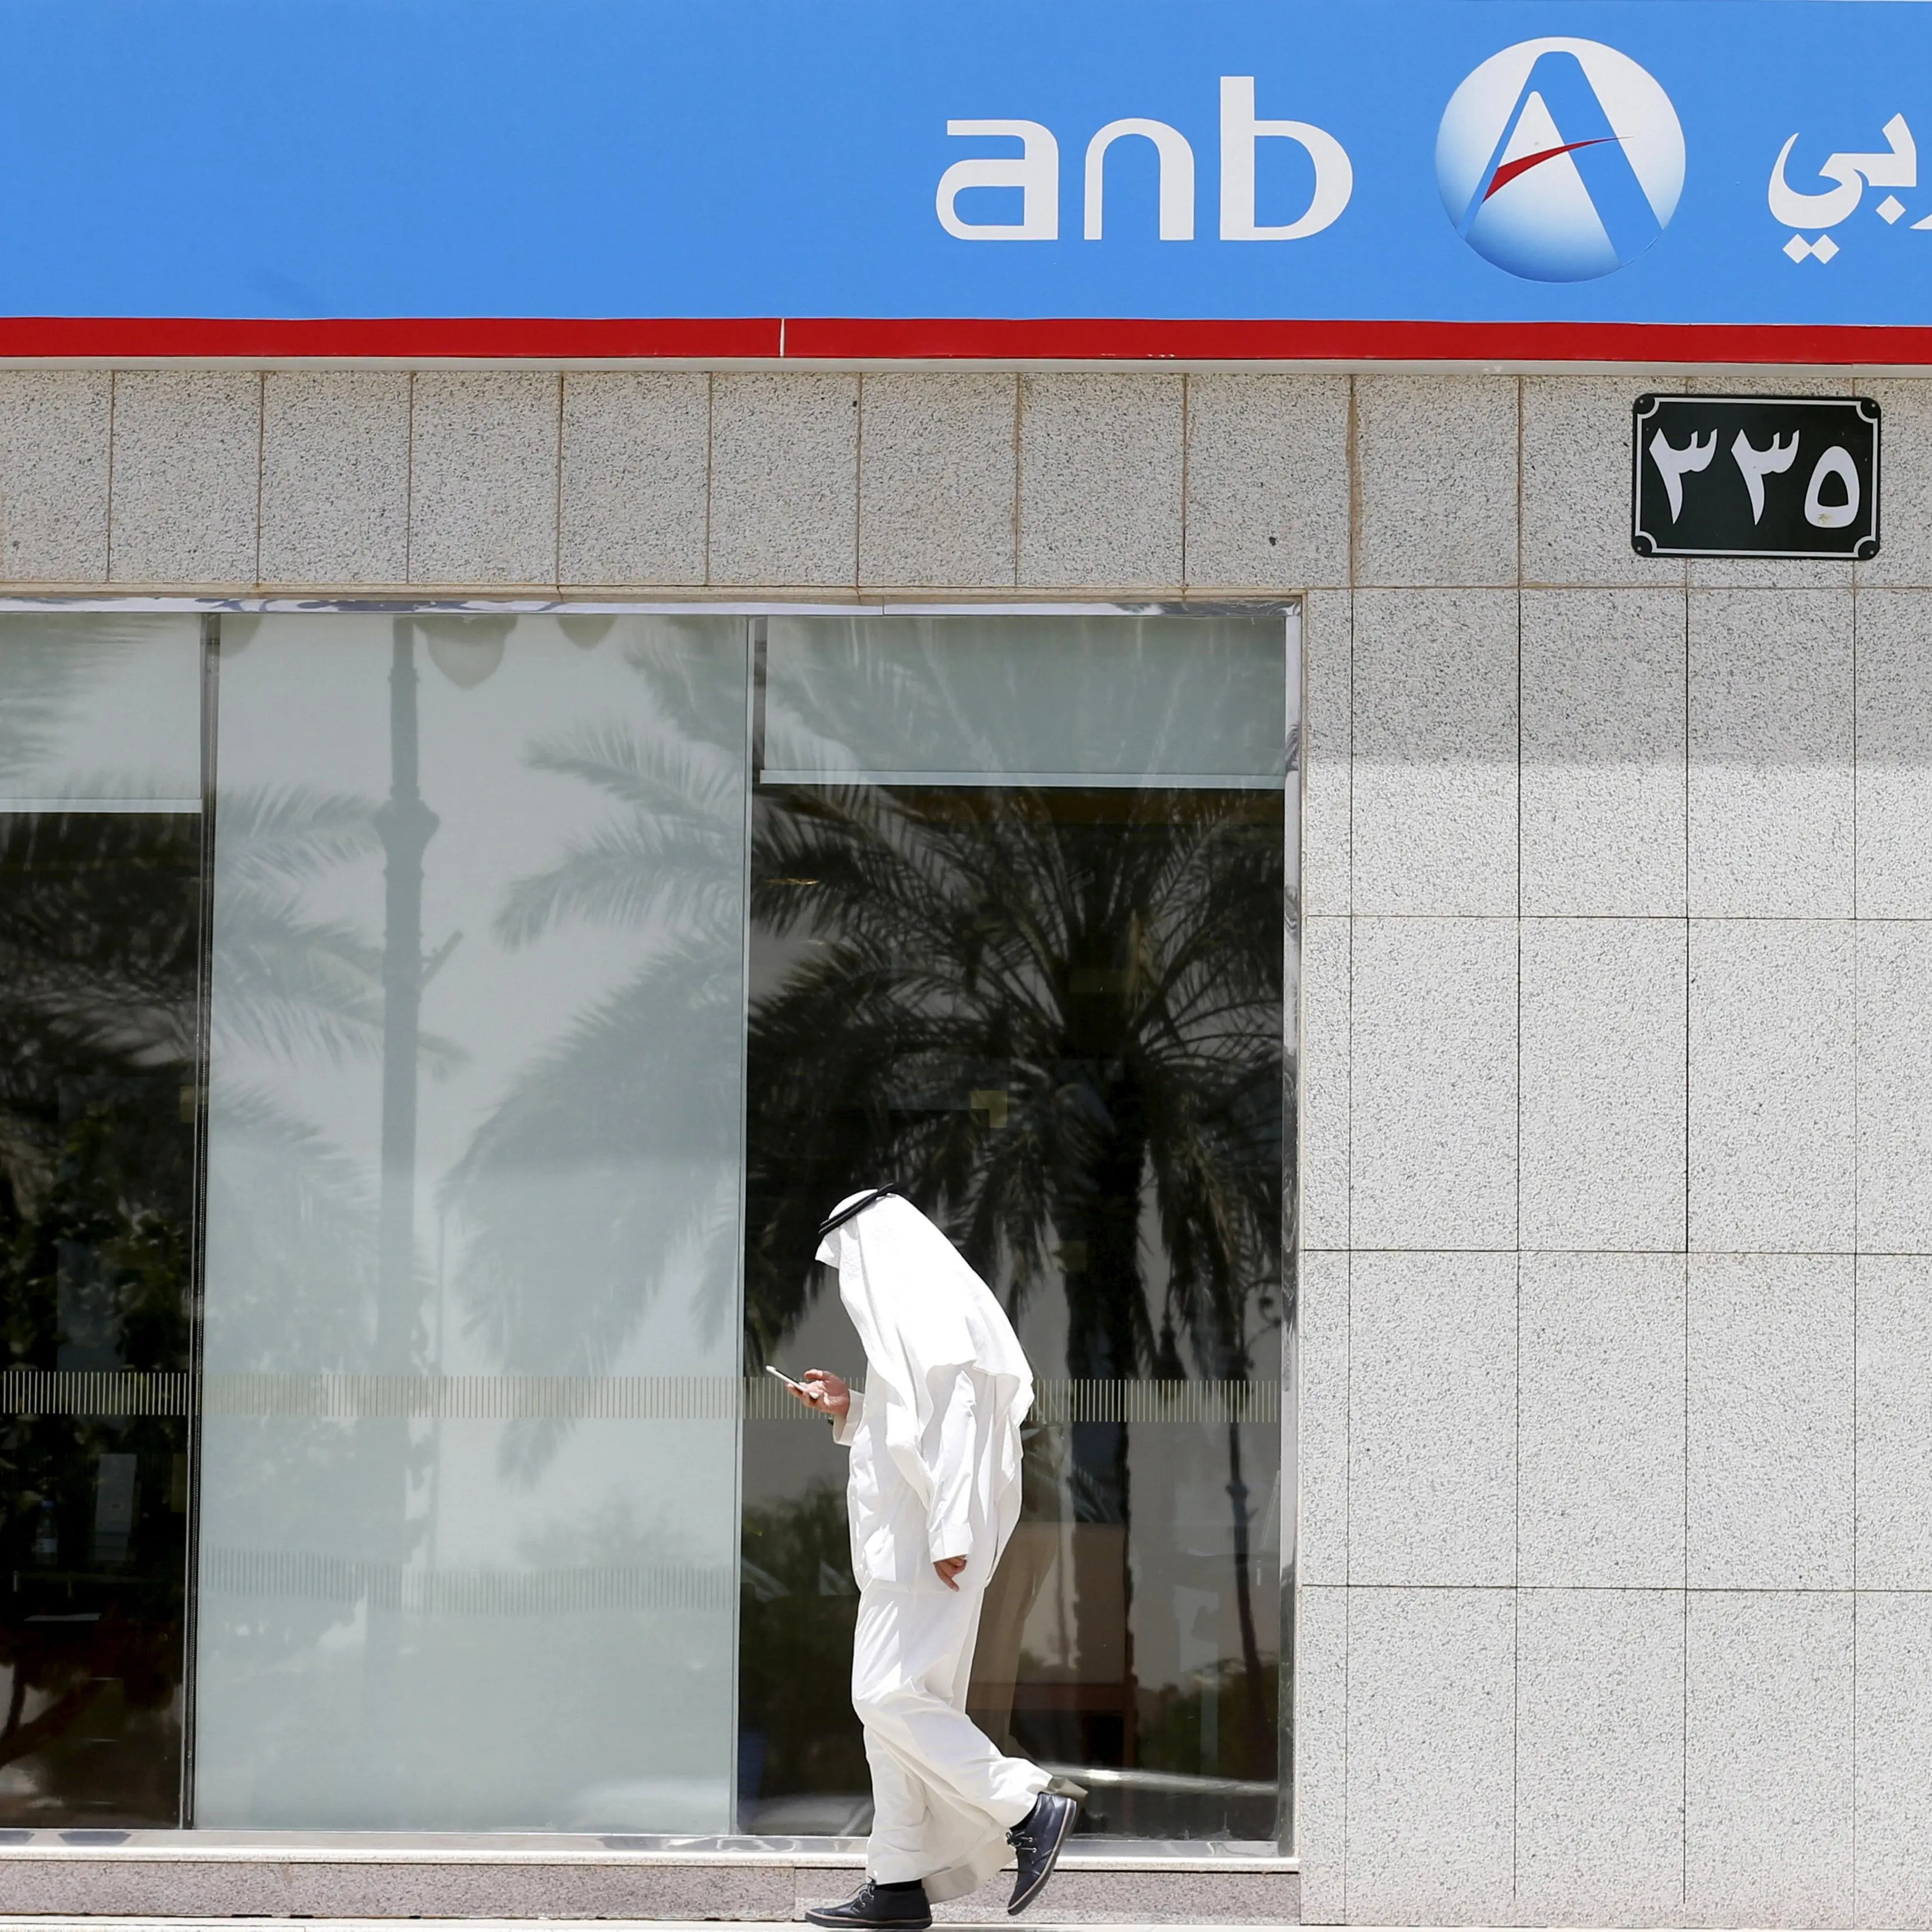 ارتفاع صافي أرباح البنك العربي الوطني السعودي بنسبة 13% خلال الربع الأول من العام